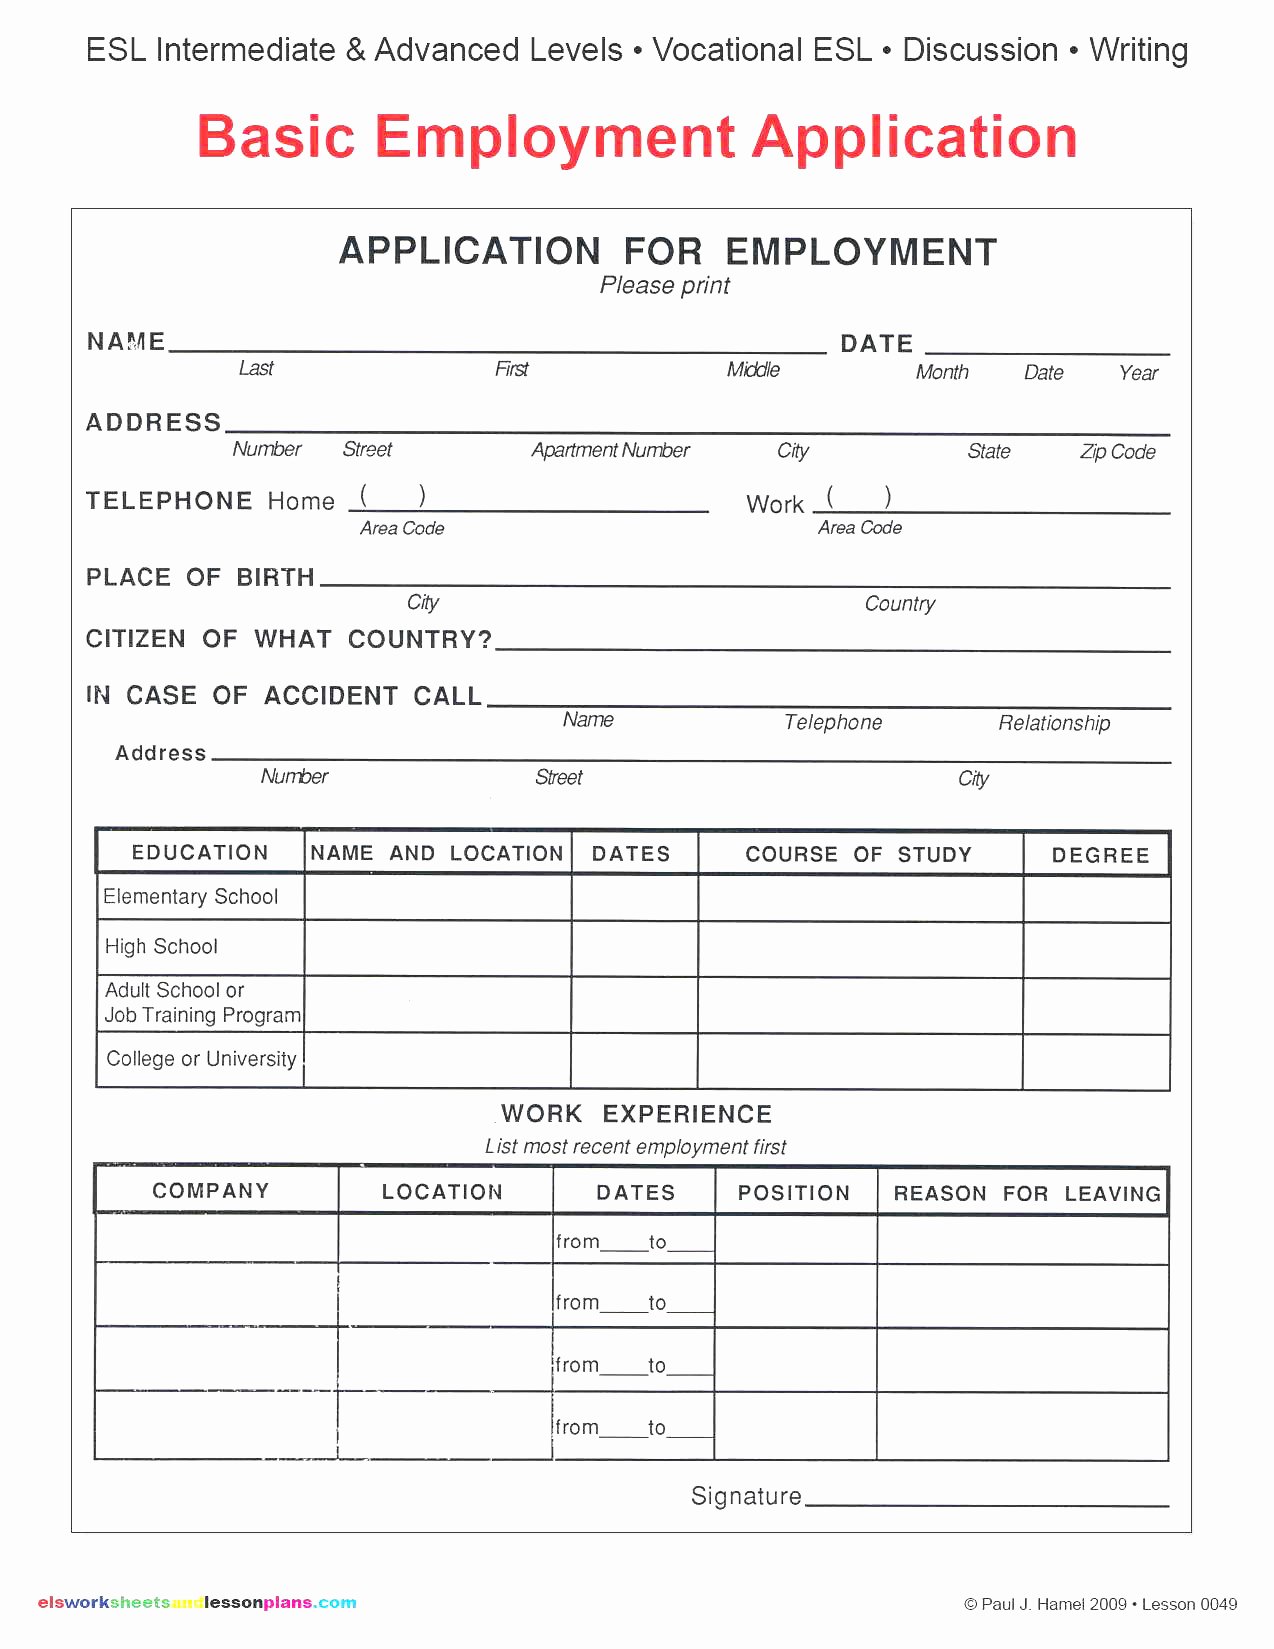 Basic Job Application Templates Inspirational Basic Employment Application Template 9 Contesting Wiki